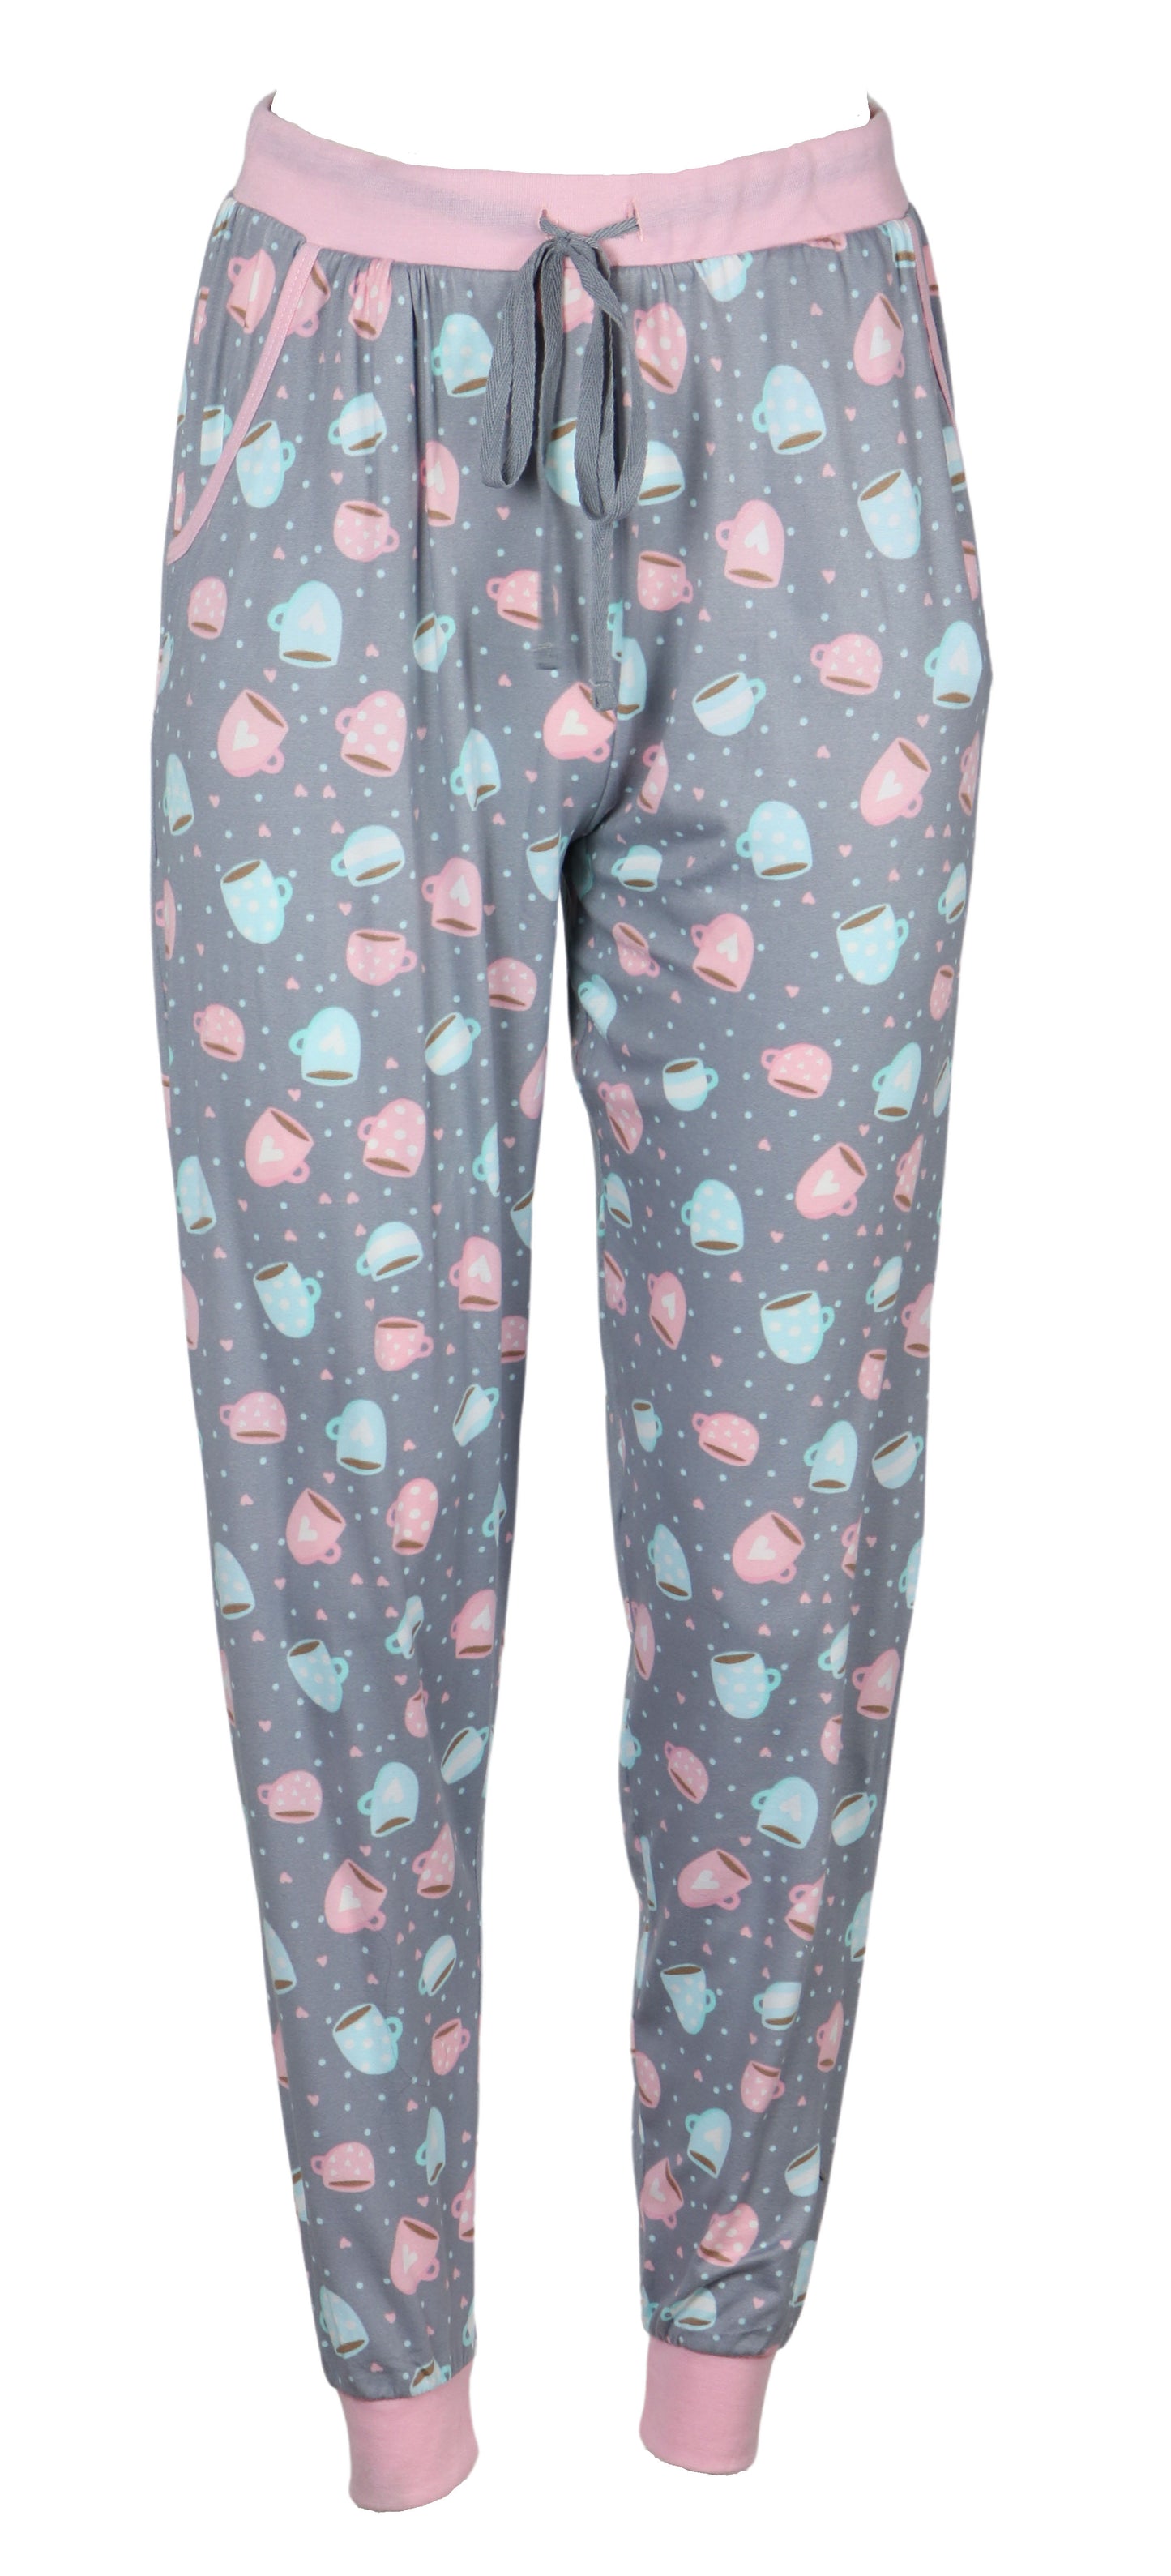 Rise & Shine Jogger Grey & Pink Pajama Set